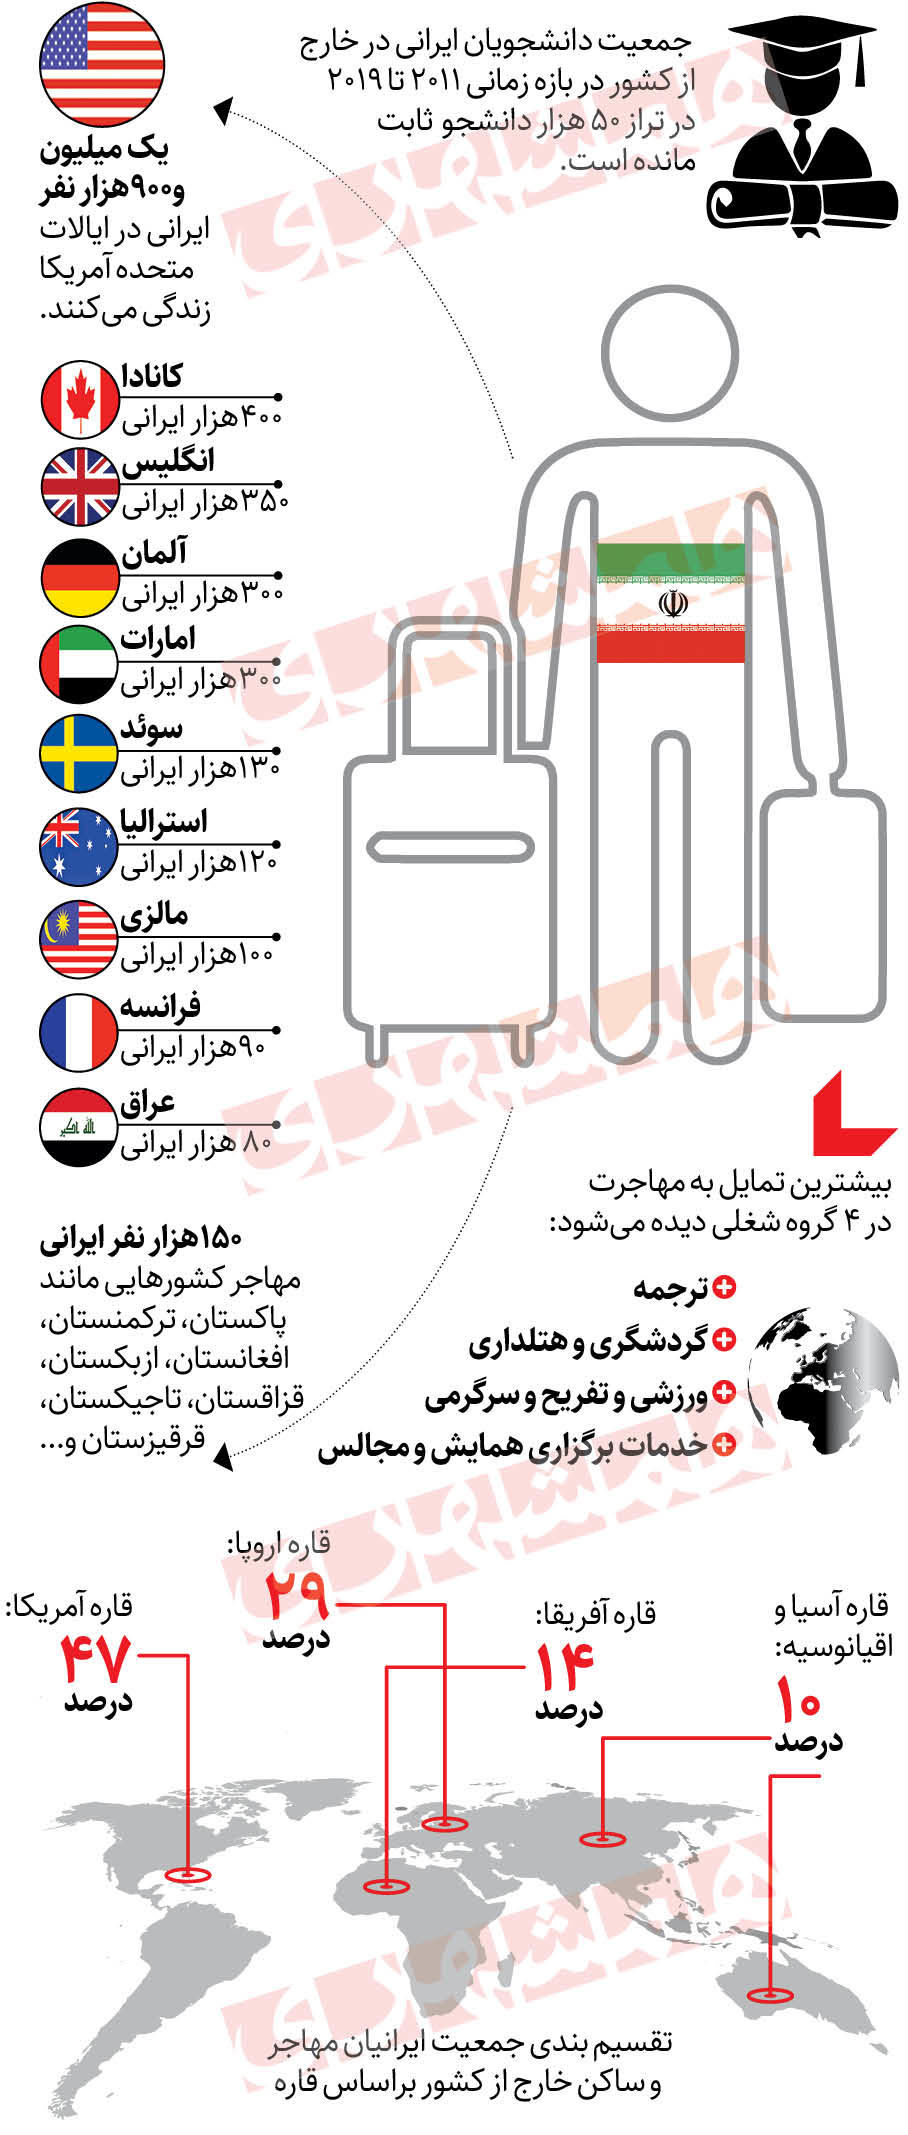 کشورهای مقصد ایرانیان برای مهاجرت